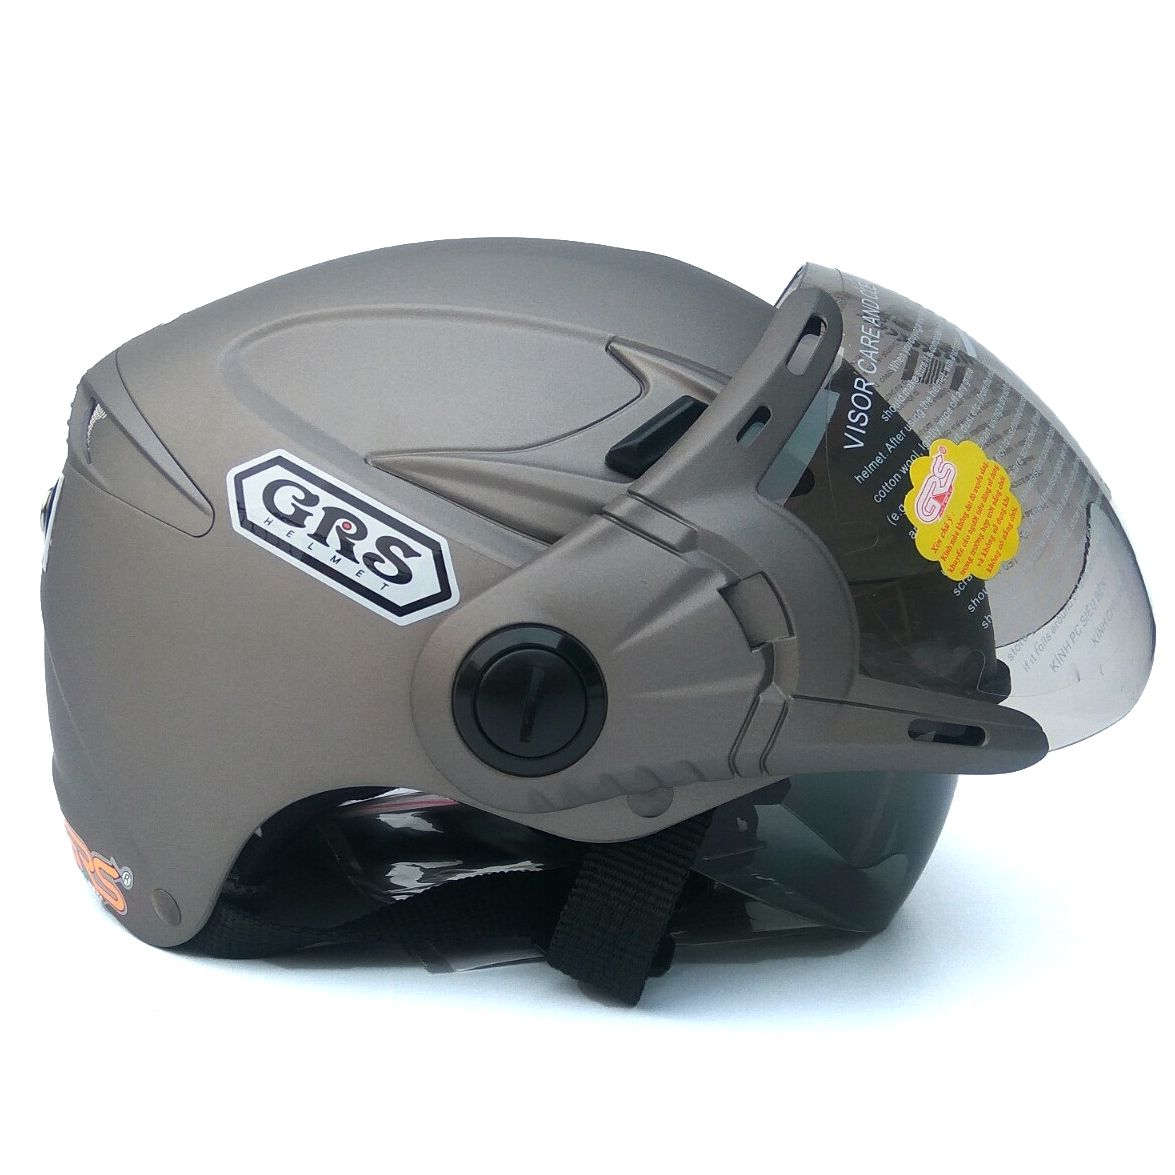 Mũ bảo hiểm GRS A966K 2 kính - Kính râm giấu bên trong và kính trong lớn bên ngoài - Rất tiện lợi đặc biệt trong mùa hè